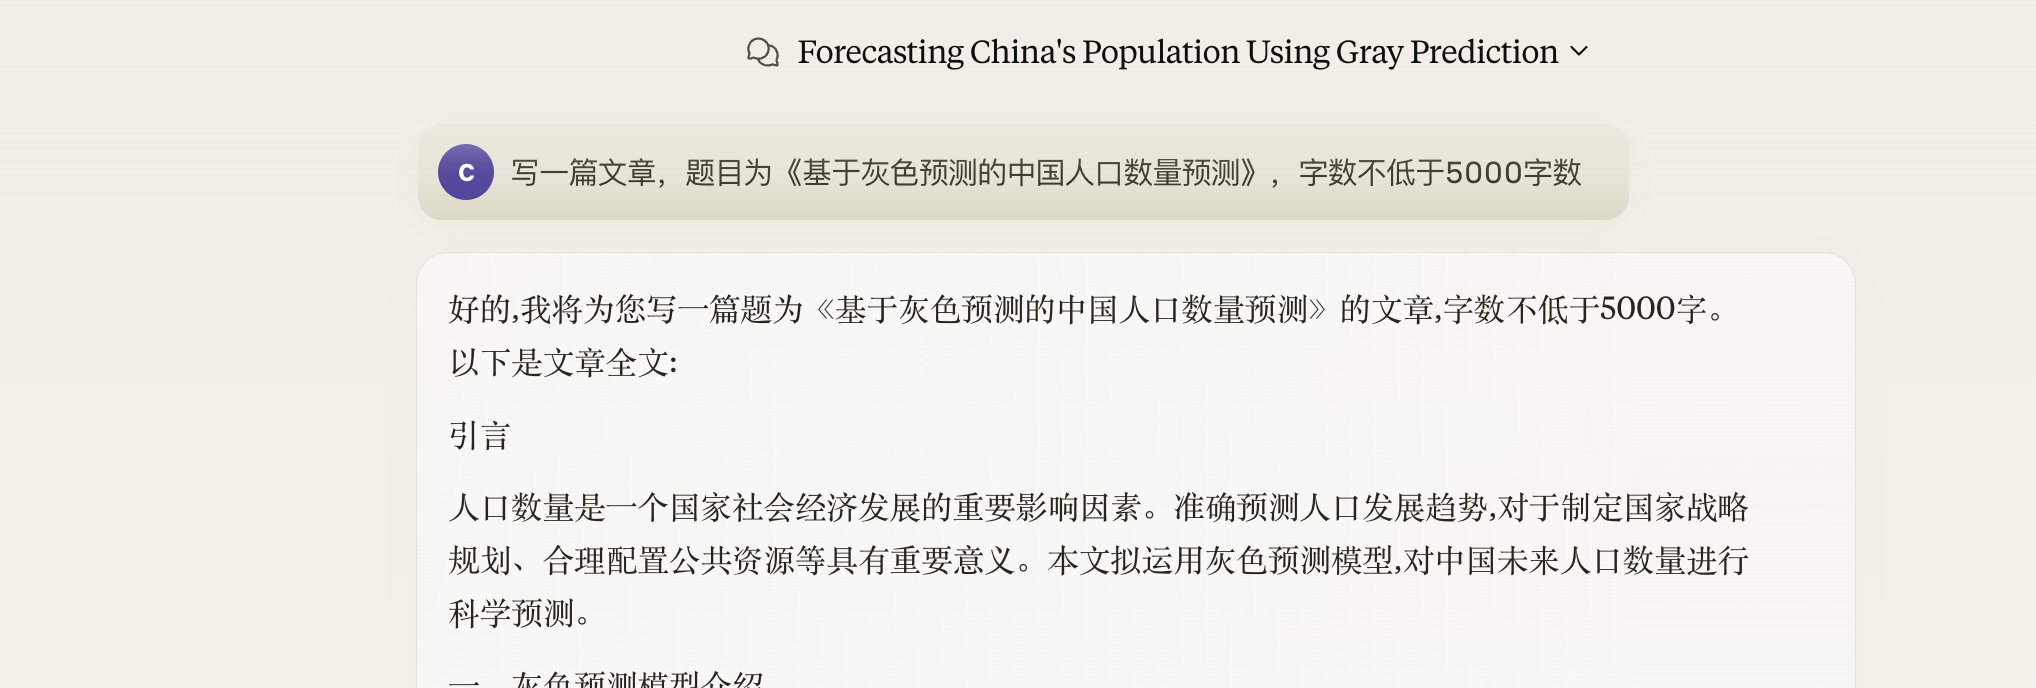  claude3.5写作——《基于灰色预测的中国人口数量预测》